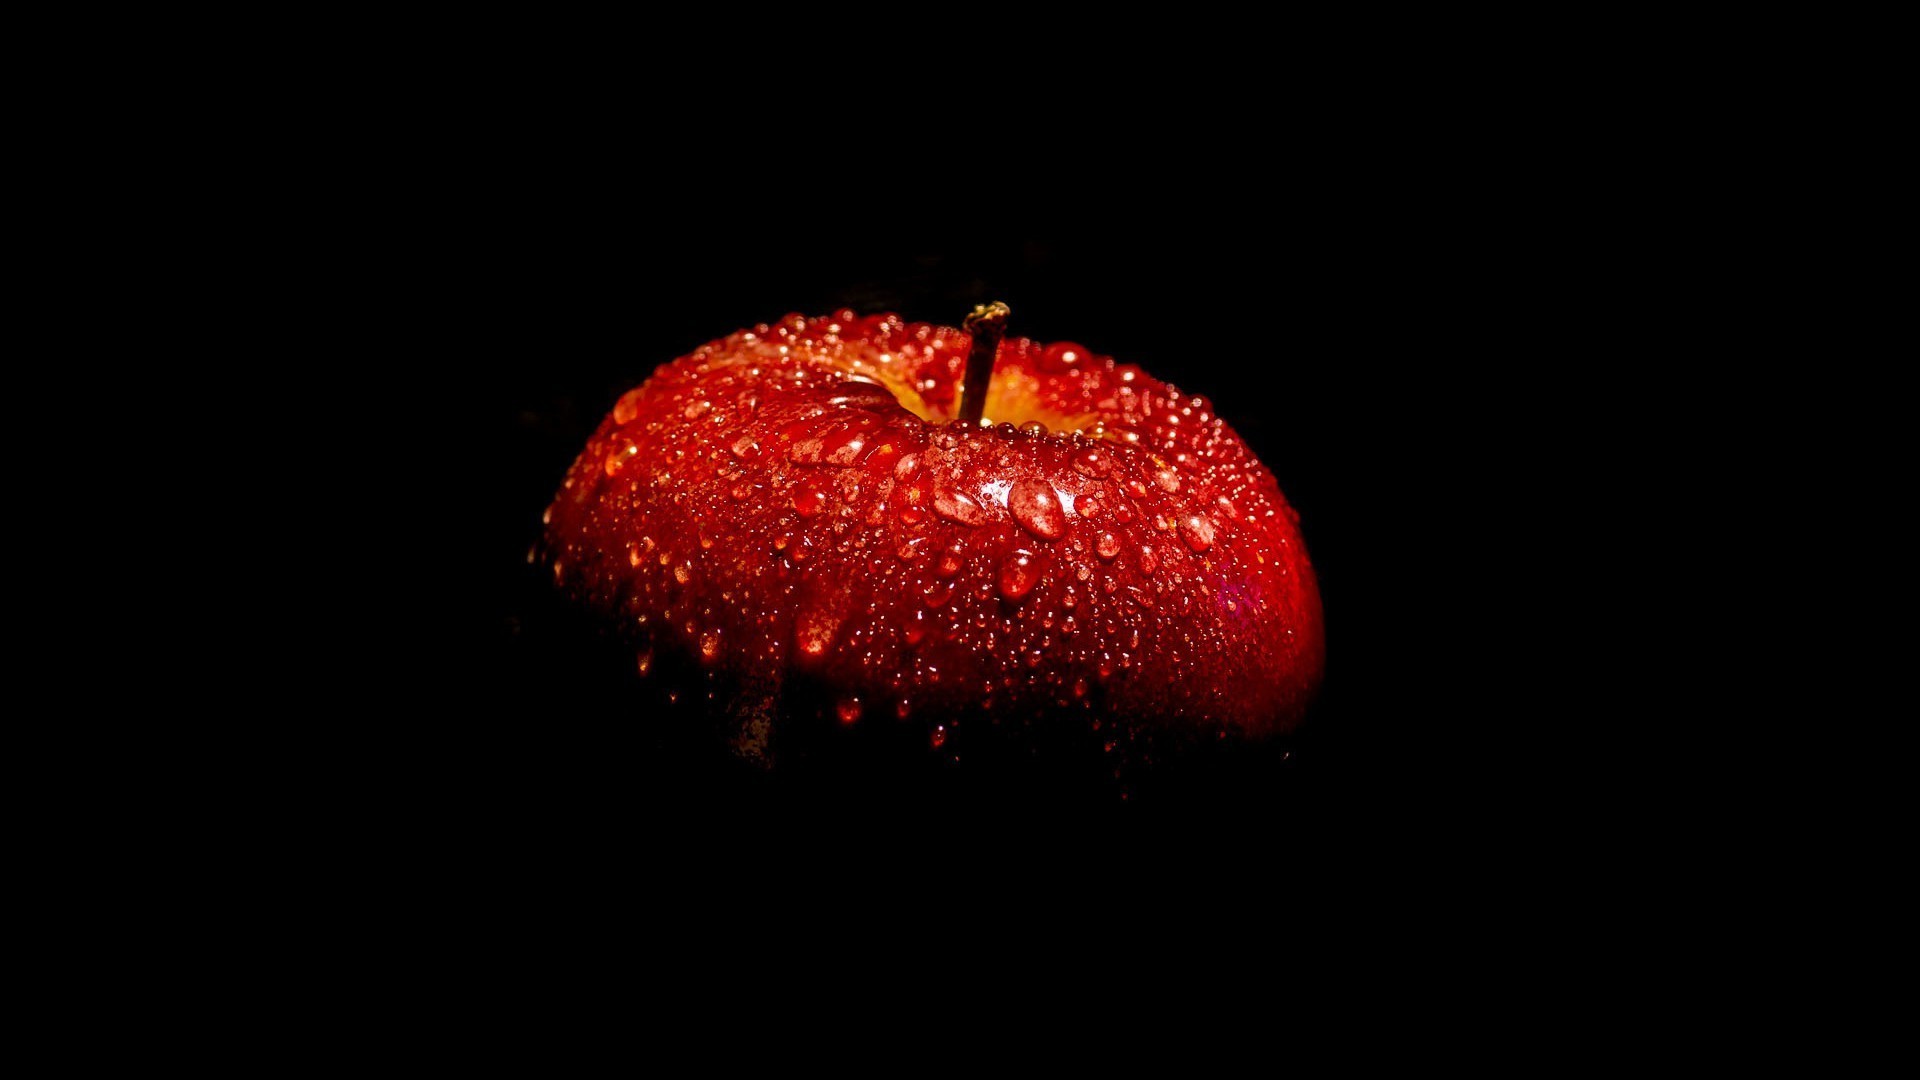 капельки и вода еда фрукты яблоко расти падение кондитерское изделие сладкий сочные вкусные